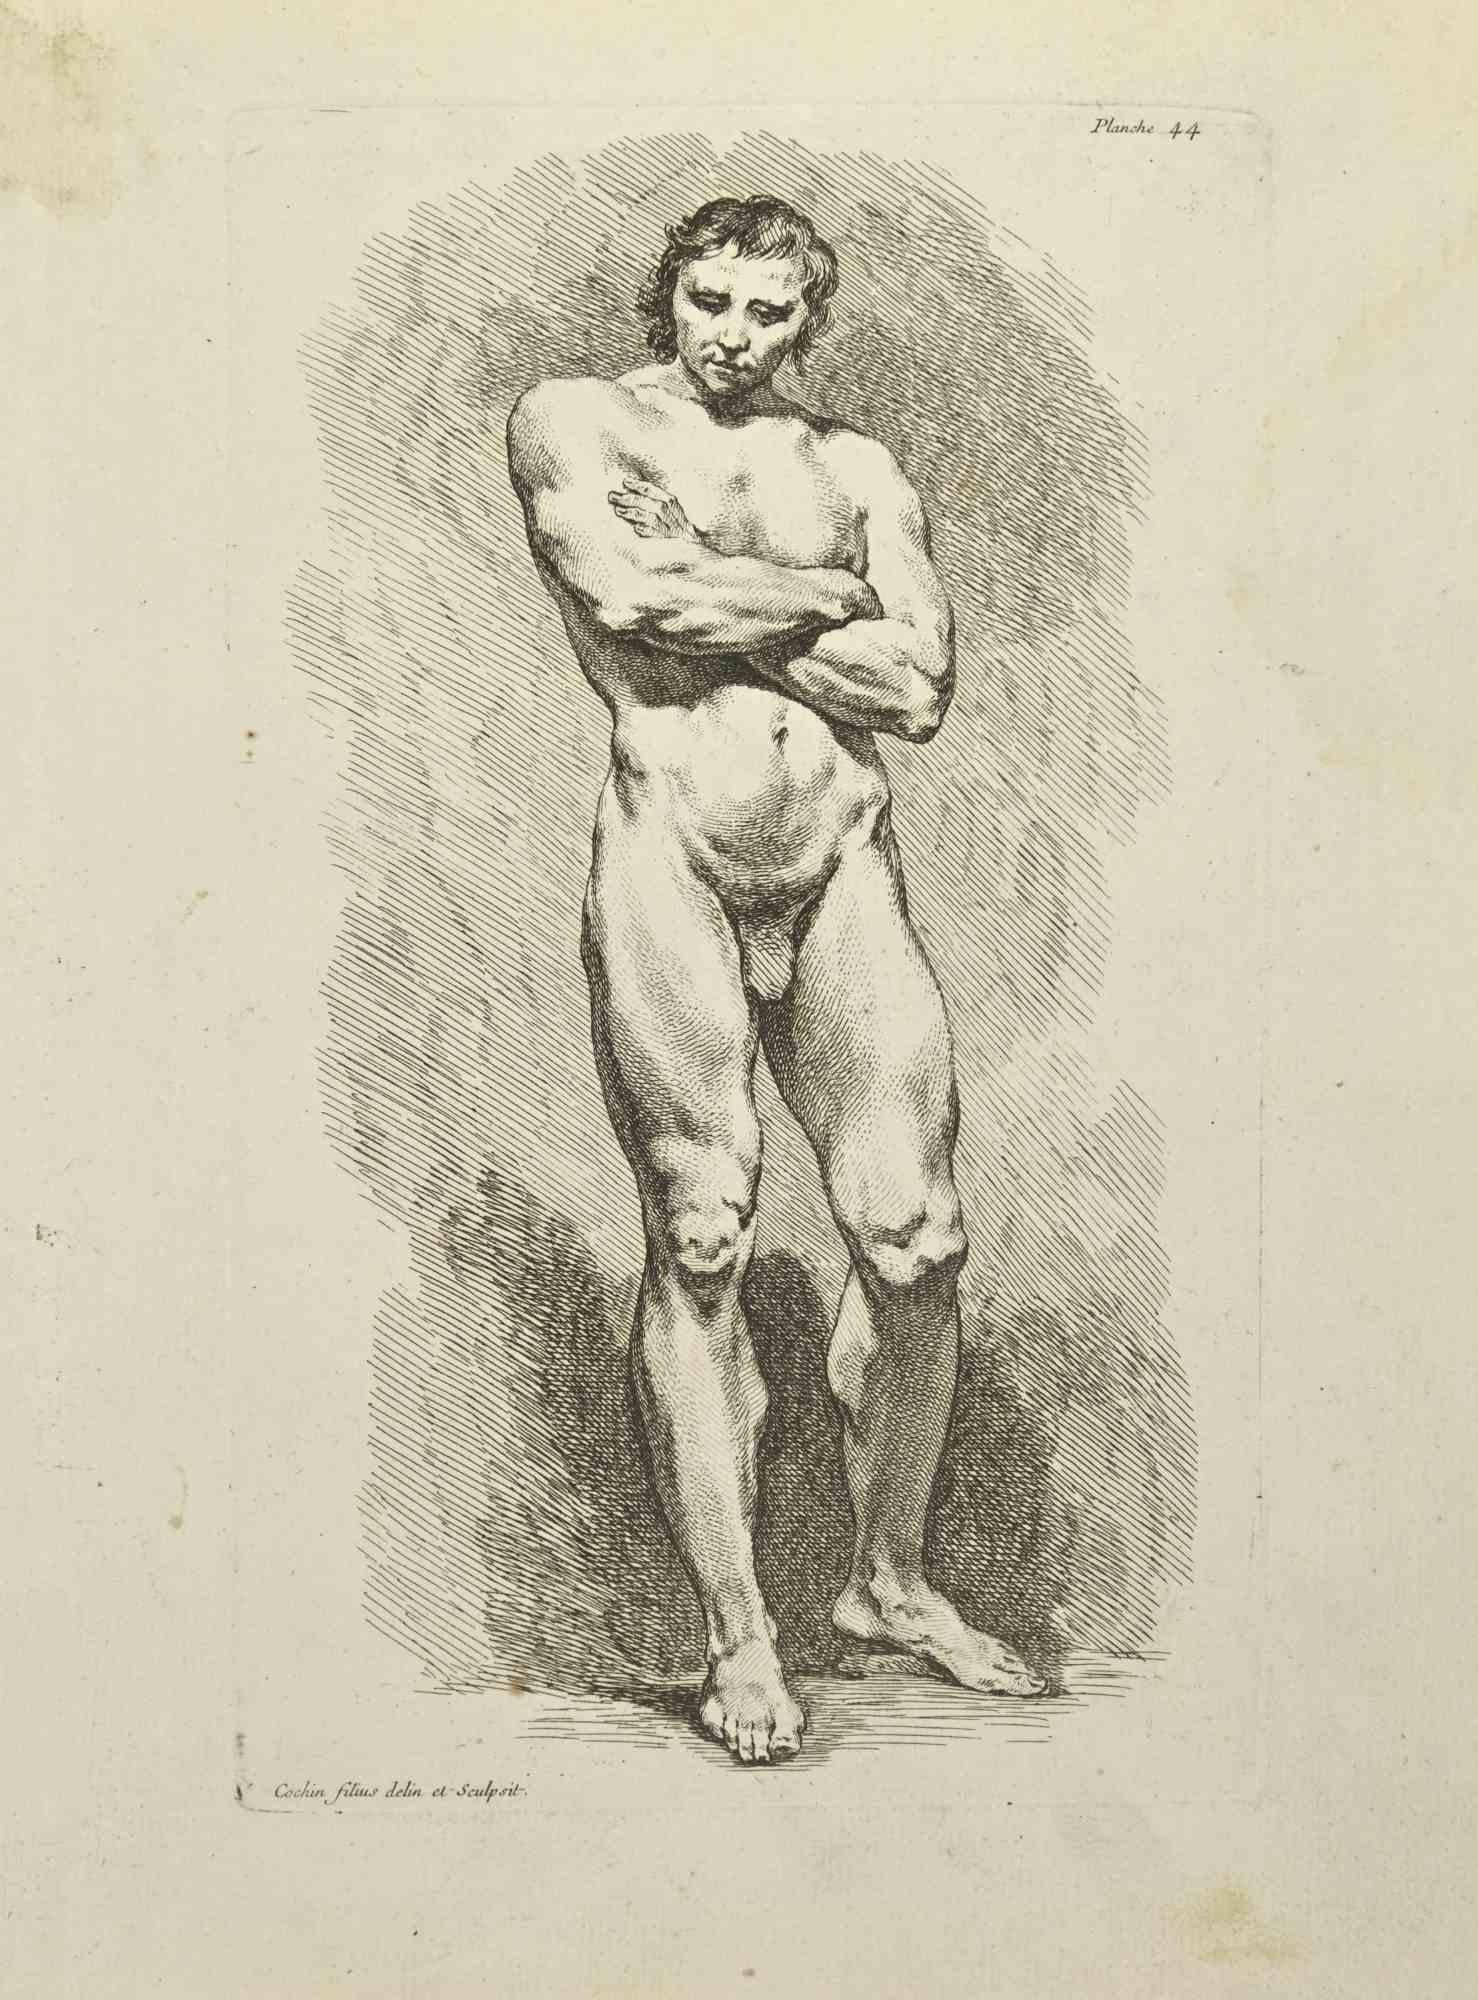 Anatomie-Studien ist eine Radierung von Nicholas Cochin aus dem Jahr 1755.

In der Platte signiert.

Guter Zustand mit Stockflecken und Falten.

Das Kunstwerk wird mit sicheren Strichen dargestellt.

Die Radierung wurde für die Anatomie-Studie